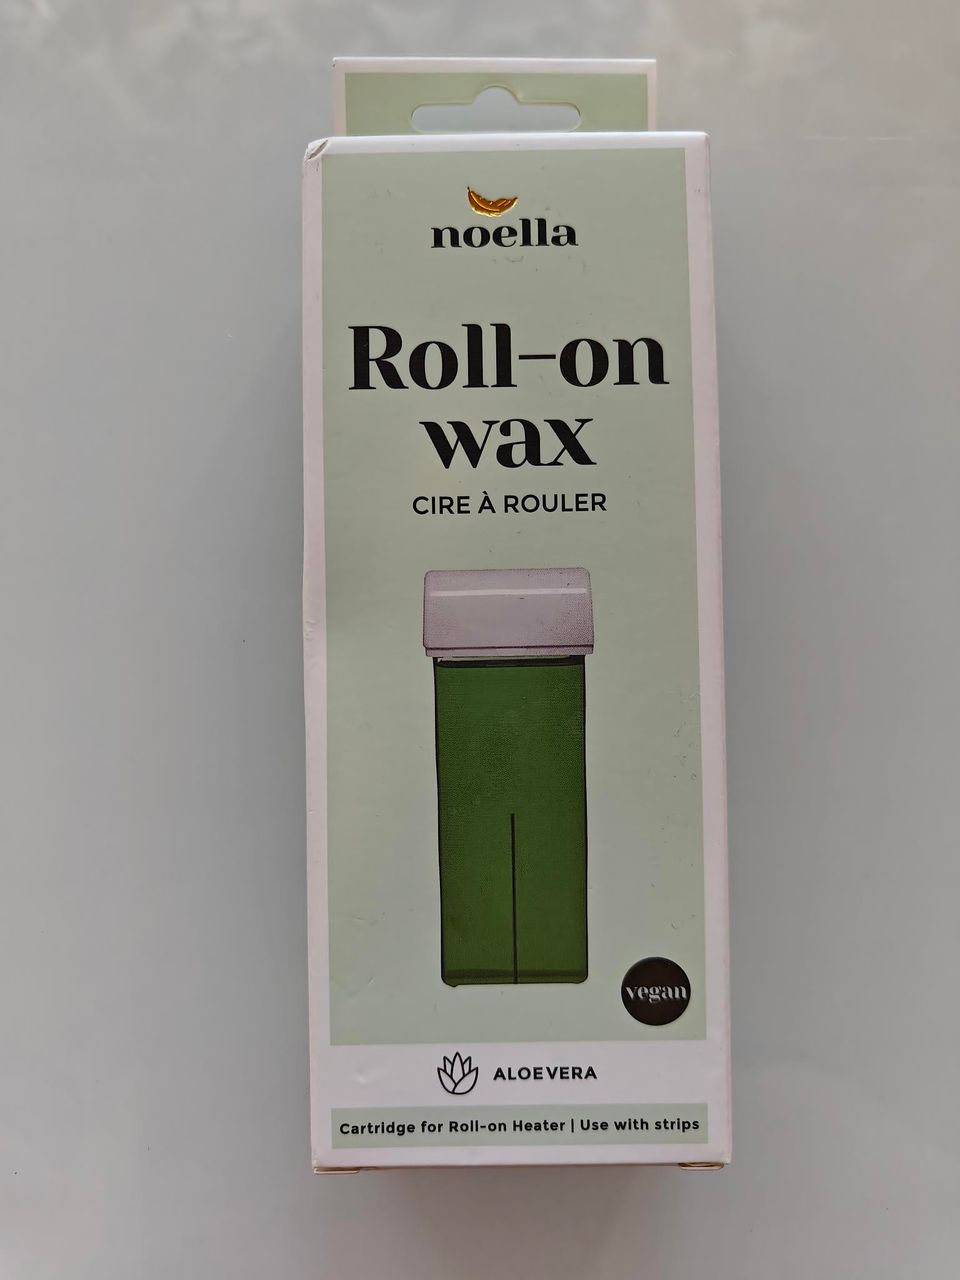 Noellan Roll-on wax 100ml